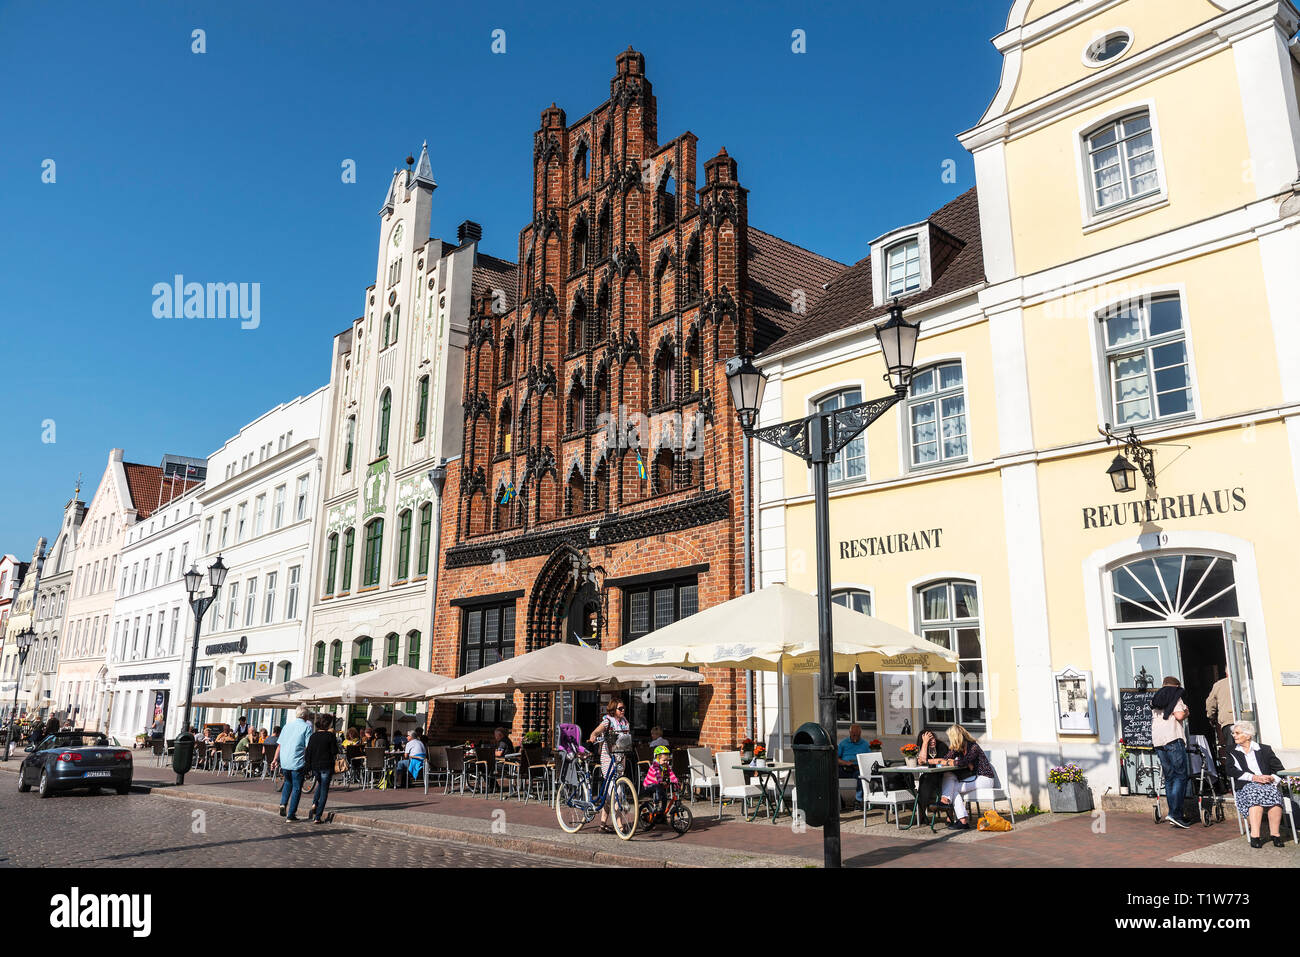 Historische Giebelhäuser, Restaurant, Market Place, Wismar, Mecklenburg-Vorpommern, Deutschland Stockfoto